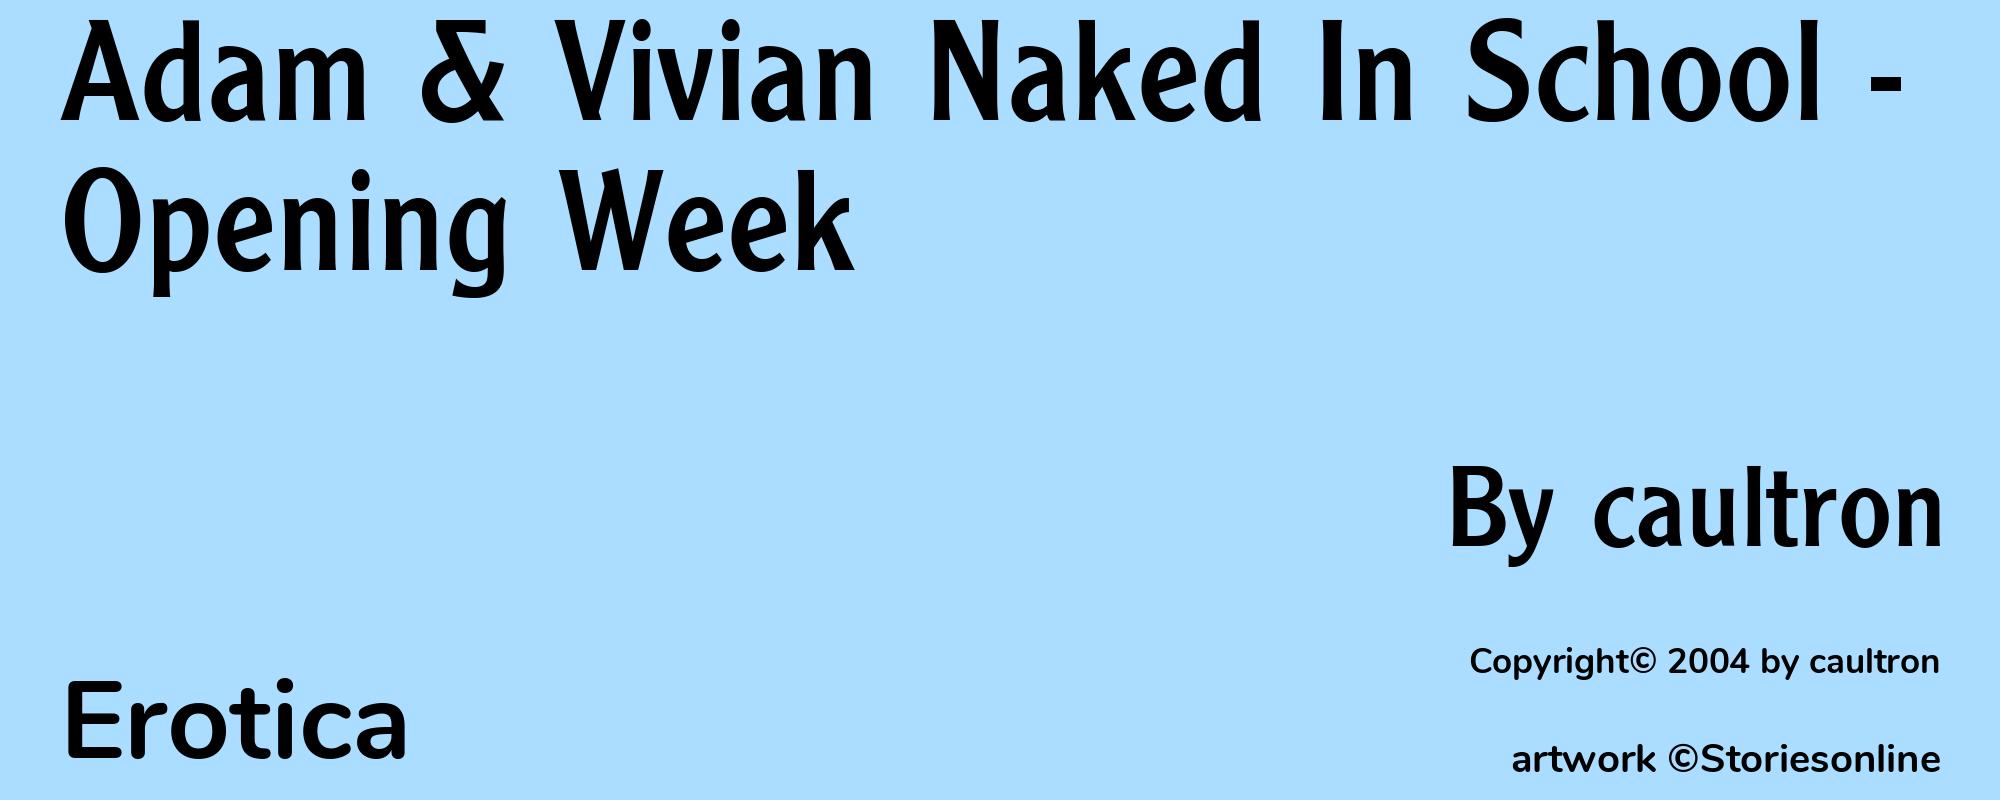 Adam & Vivian Naked In School - Opening Week - Cover